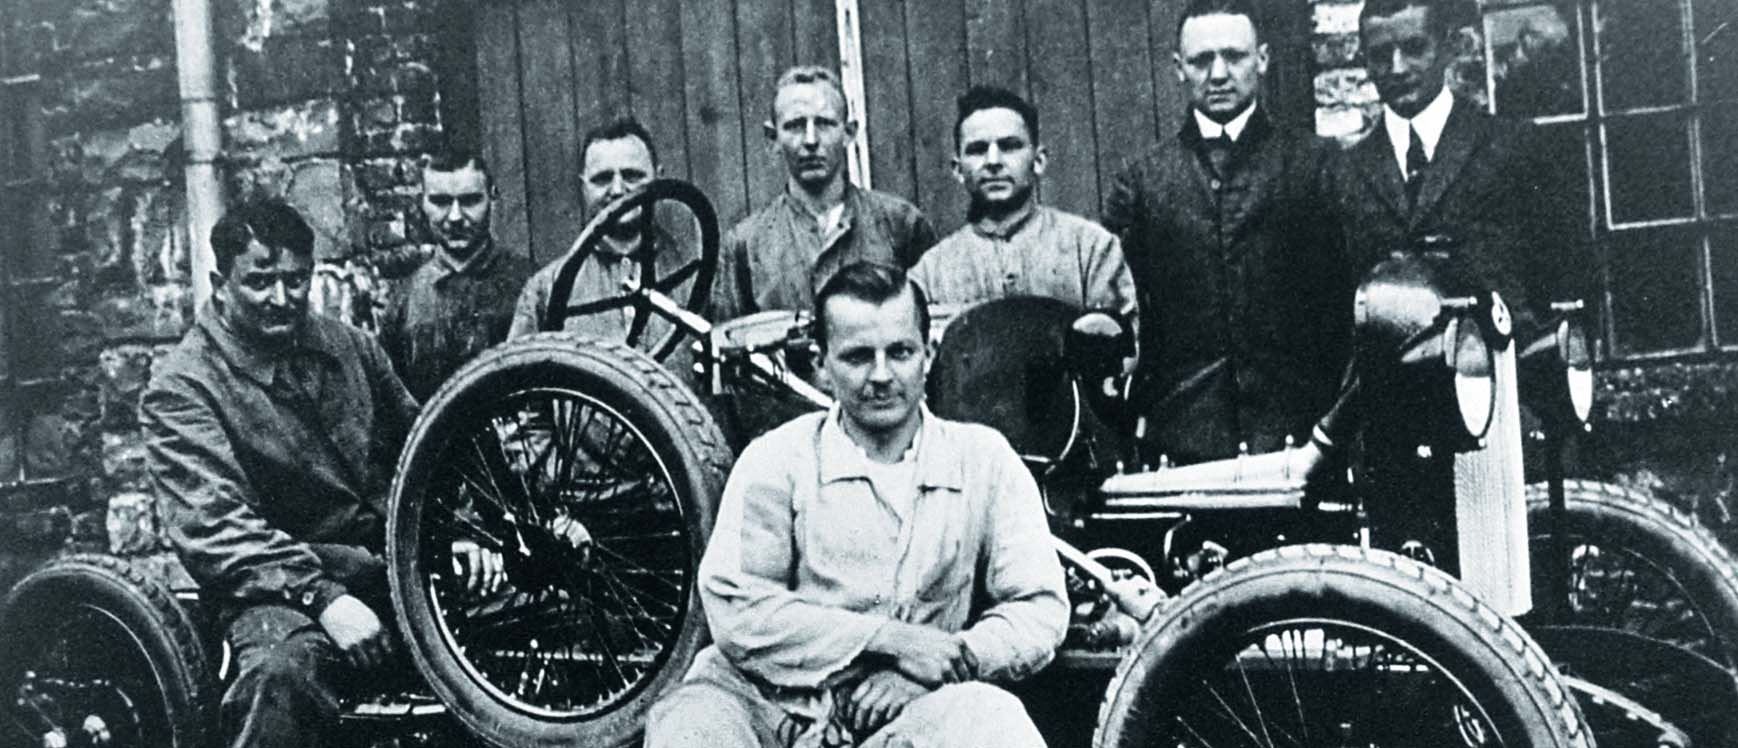 1924 Busch Automobilbau Der Busch-Wagen sich bis heute in unserem Unternehmen fort. So entsteht moderne Elektroinstallation. Der Zeit immer einen Schritt voraus.